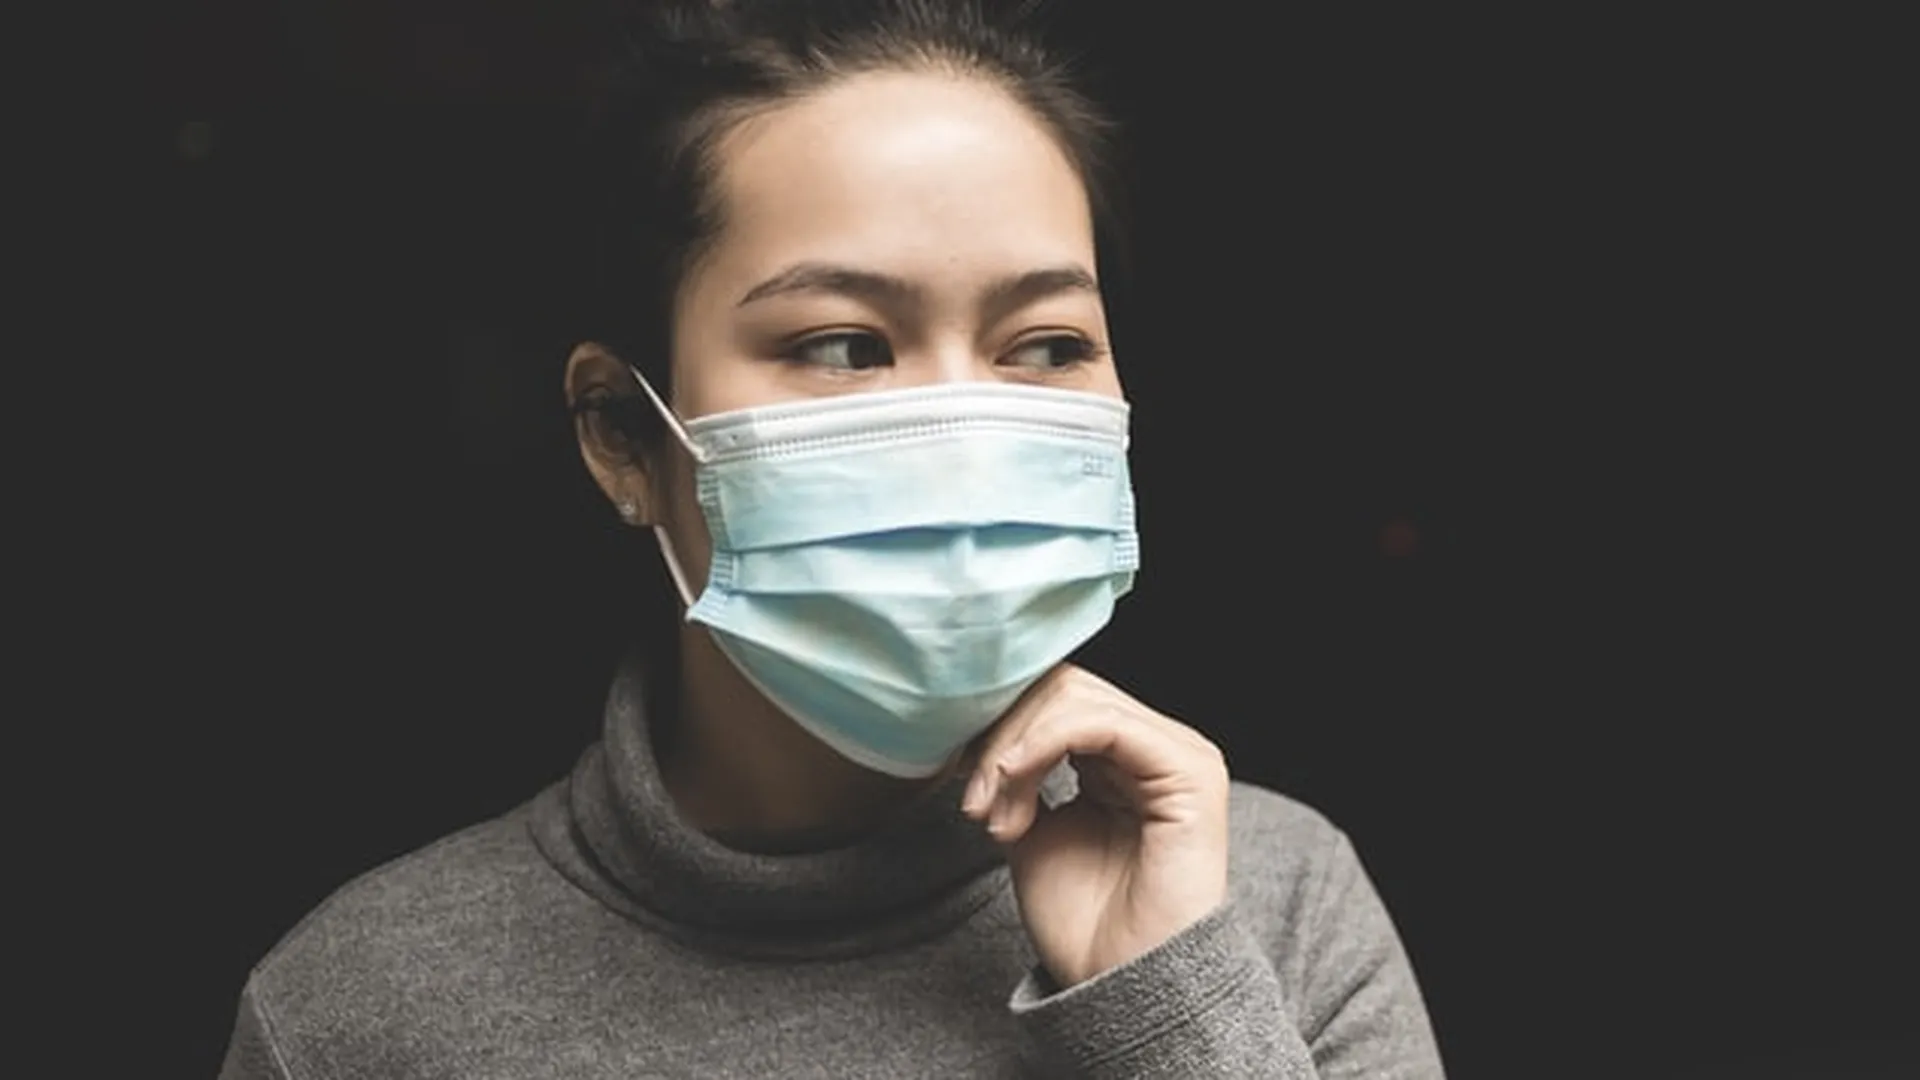 Подмосковные дизайнеры объединились в борьбе с коронавирусом — сами начали шить маски